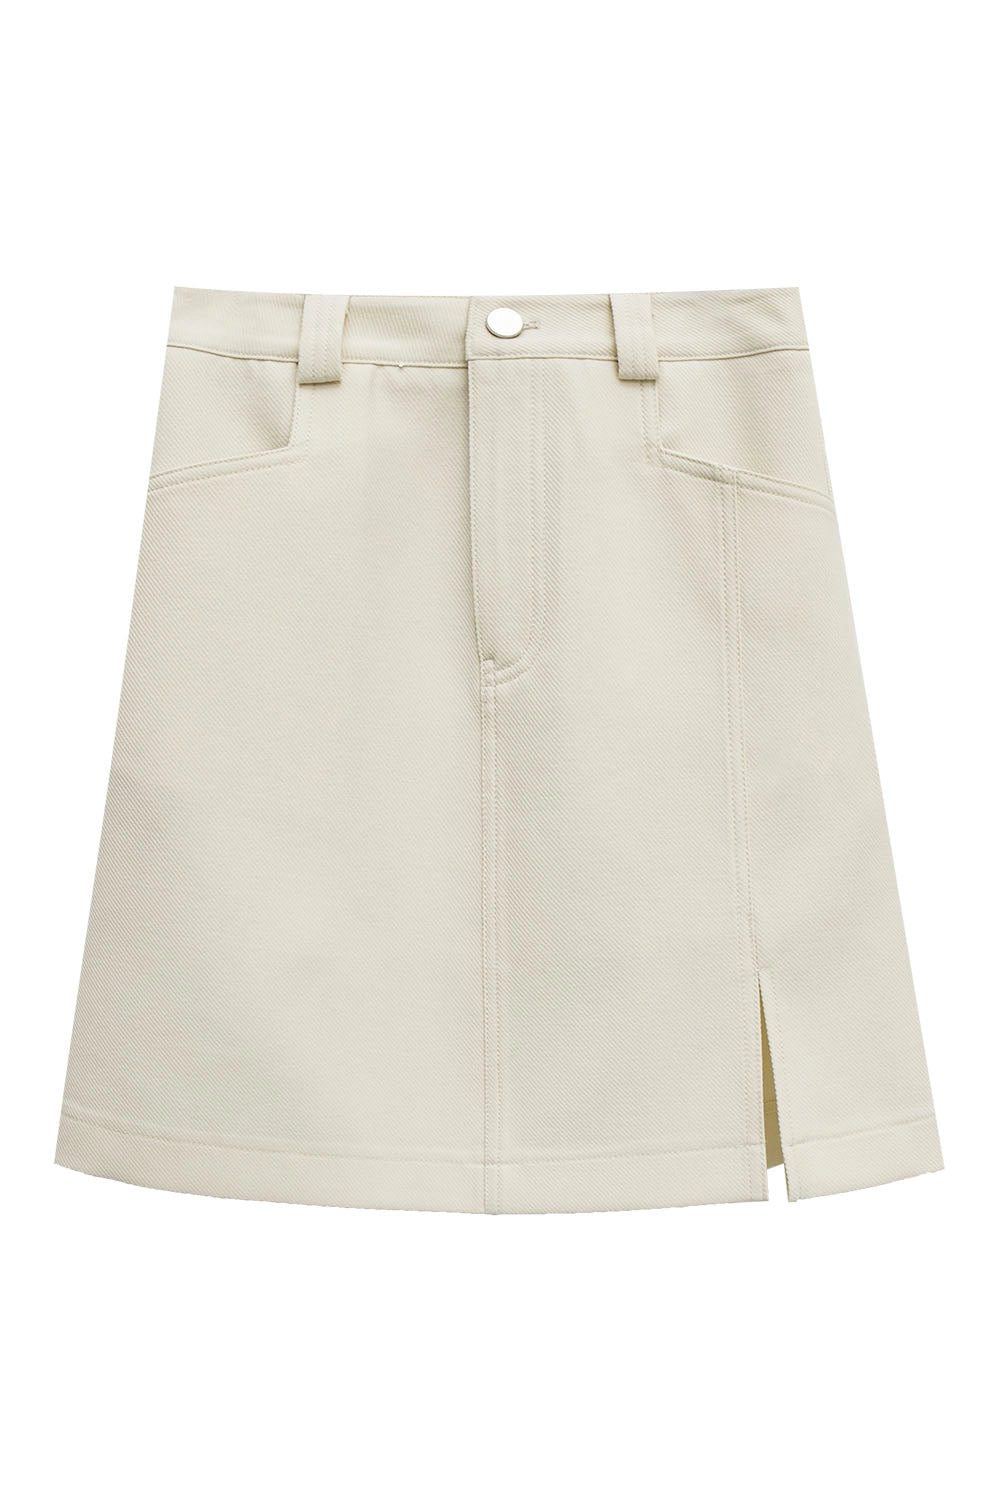 Skirt Mini Pinggang Tinggi Slim-Fit Wanita dengan Gelung Tali Pinggang dan Celah Sisi